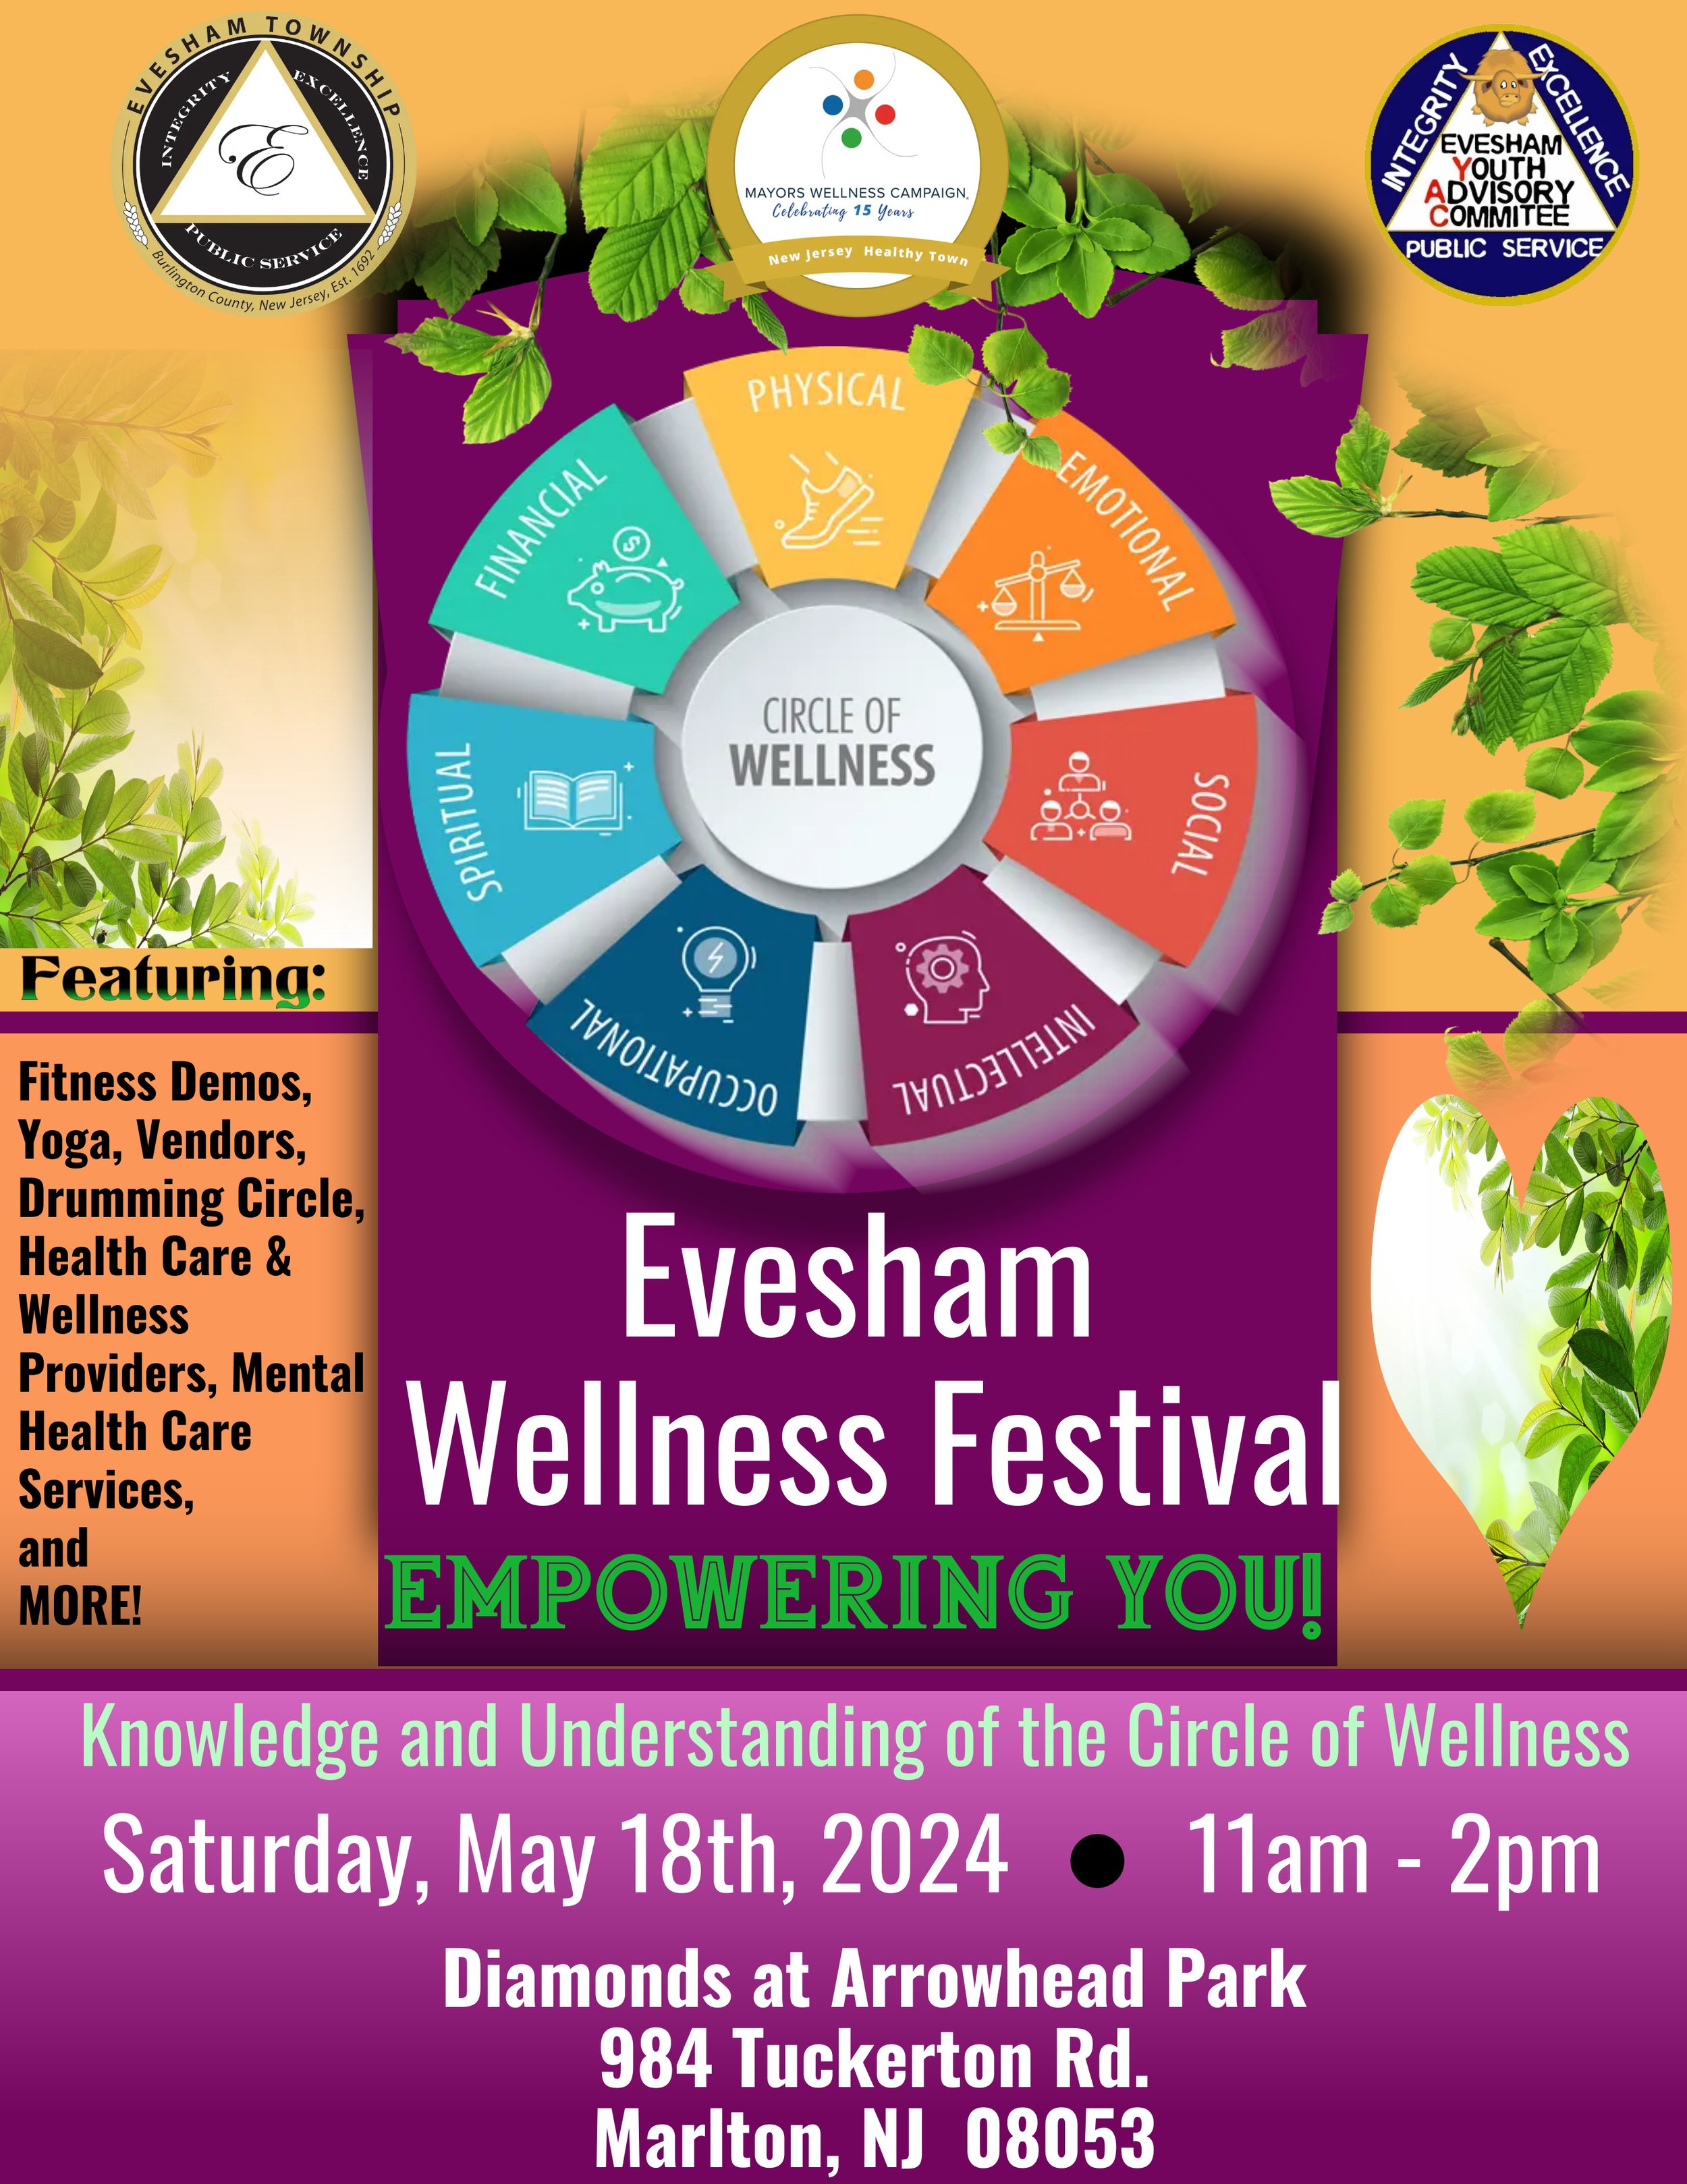 Evesham Wellness Festival 2024 Flyer (1).jpg